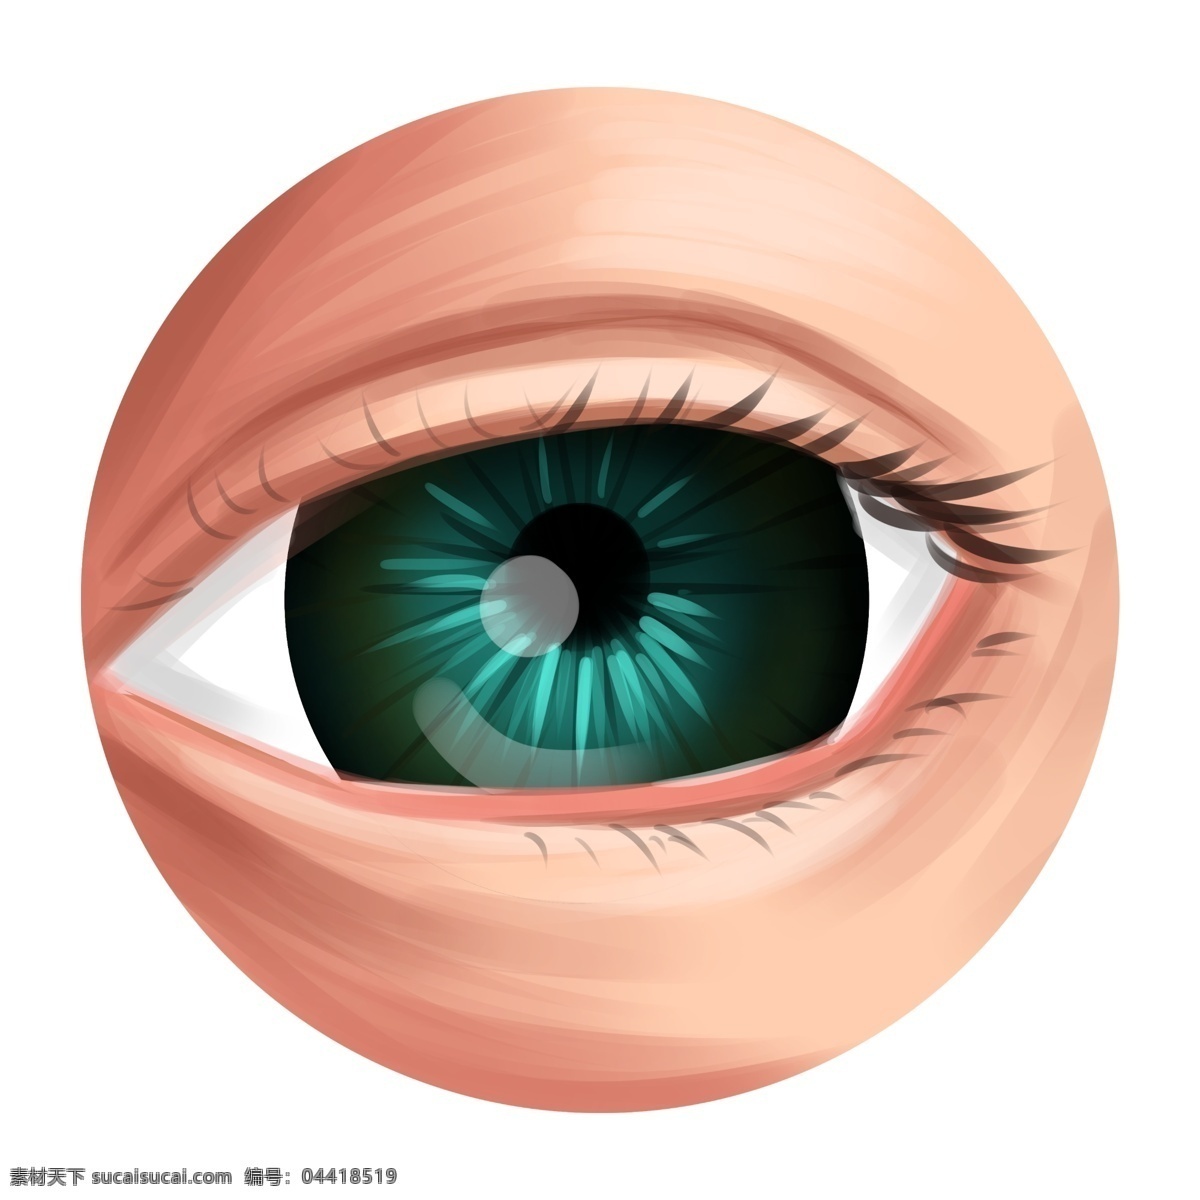 眼睛 器官 卡通 插画 漂亮的眼睛 卡通插画 人体器官 五官插画 器官插画 眼睛器官 双眼皮眼睛